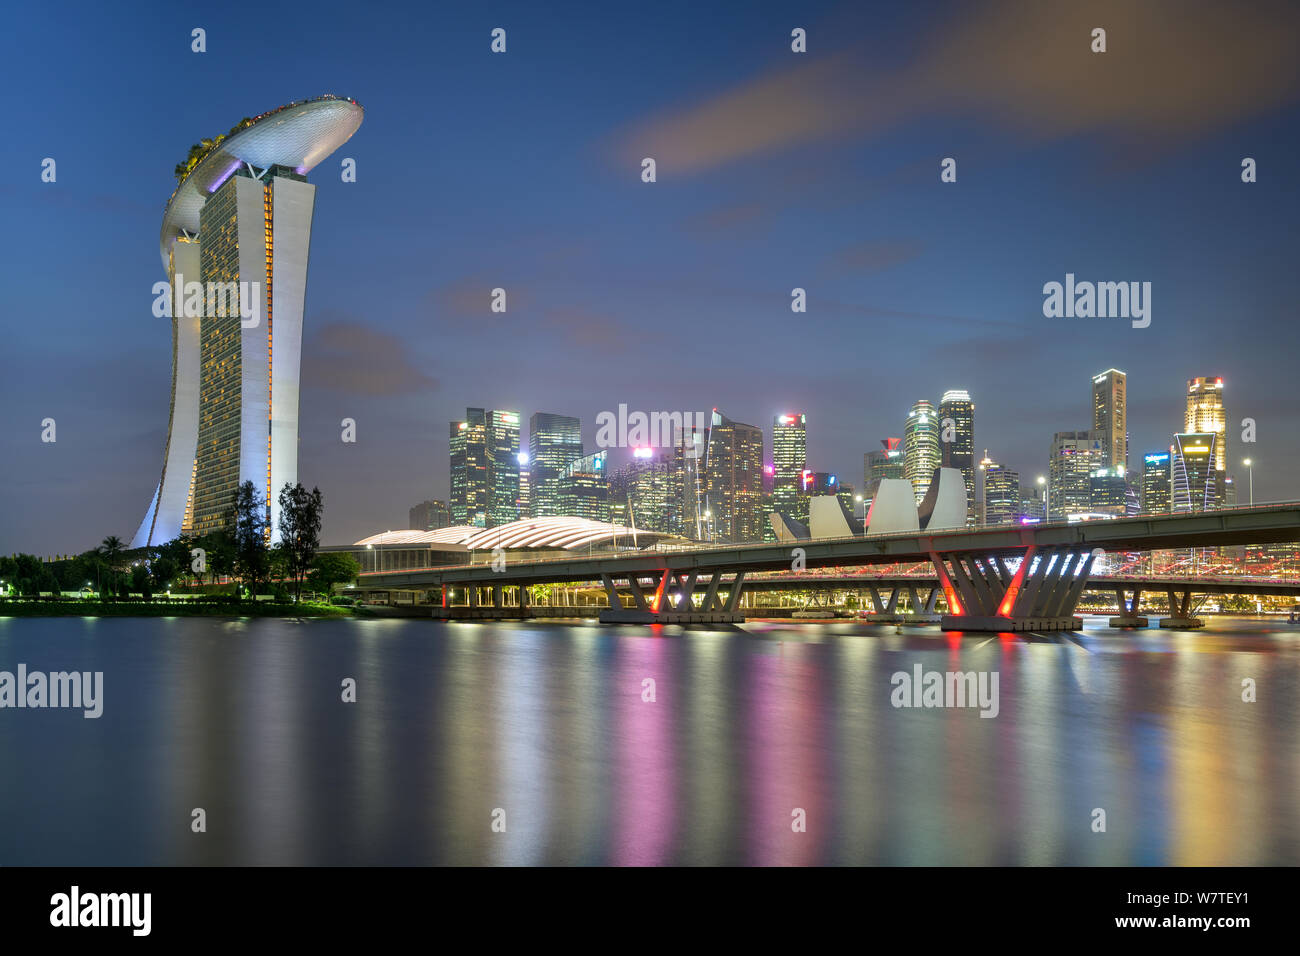 Singapur - 25. Januar 2019: Blick auf den Benjamin Sheares Brücke, das Marina Bay Sands Hotel und die Skyline des Financial District Stockfoto